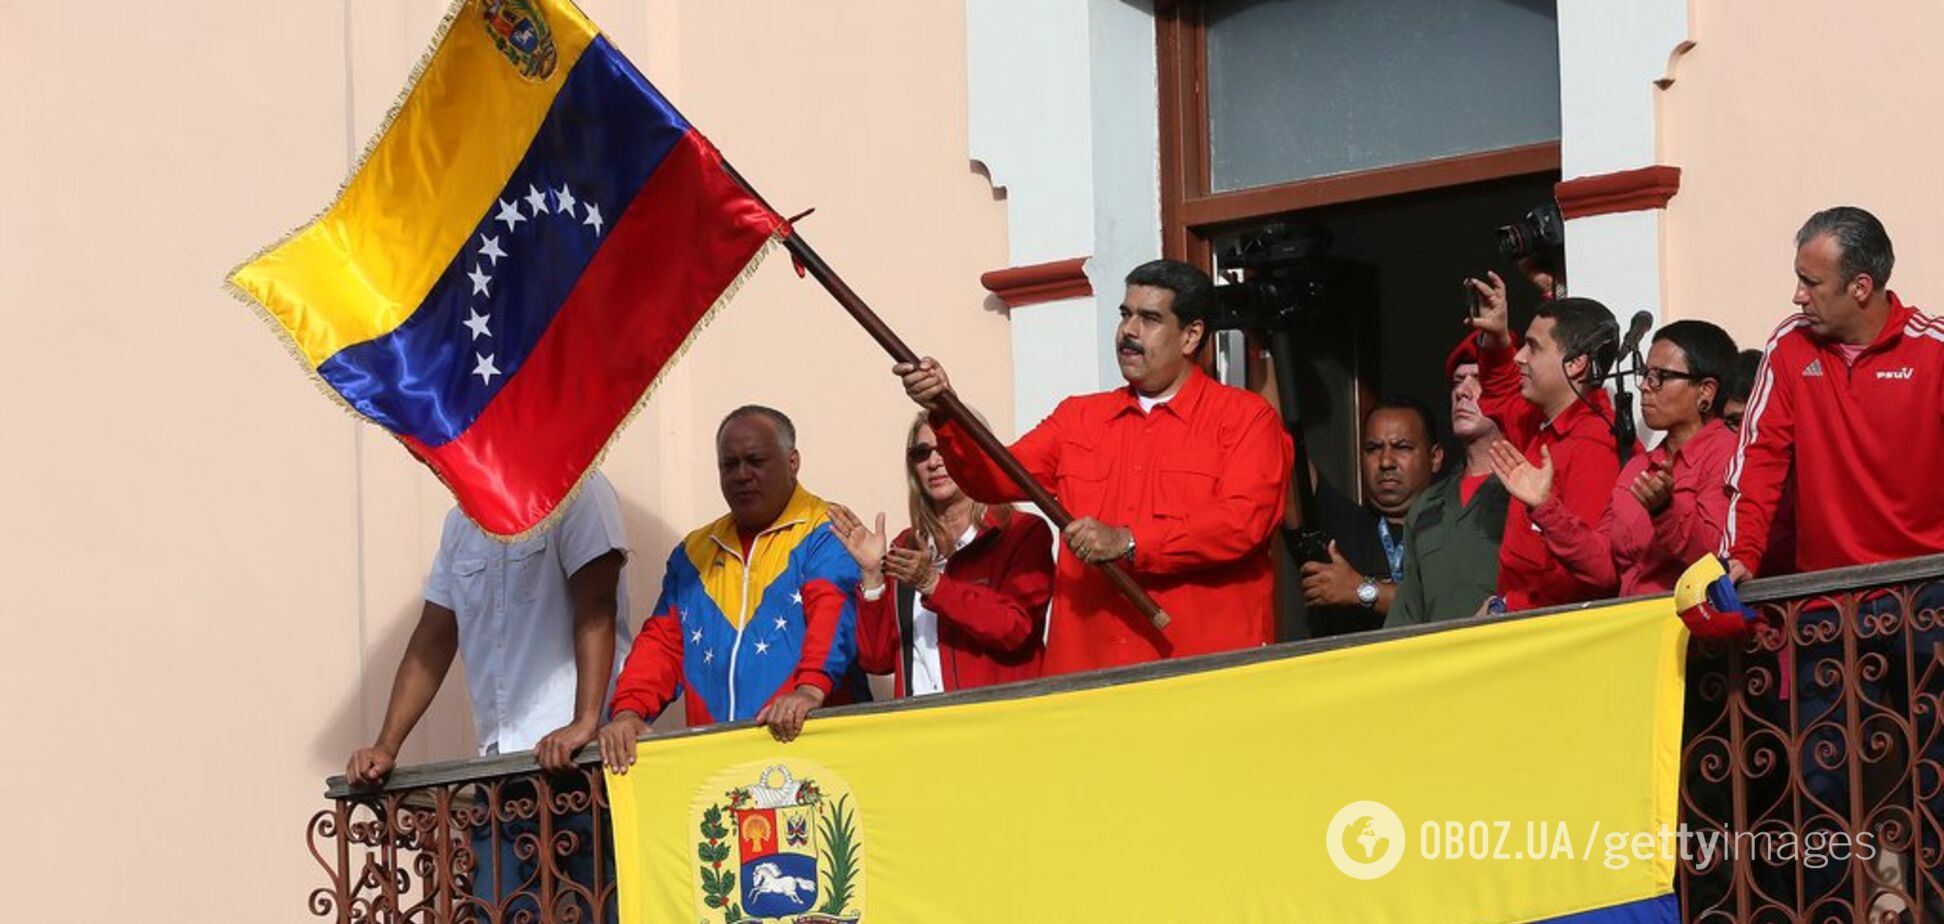 ''Немыслимое для XXI века д*рьмо'': Ганапольский уличил Россию в преступлениях в Венесуэле 